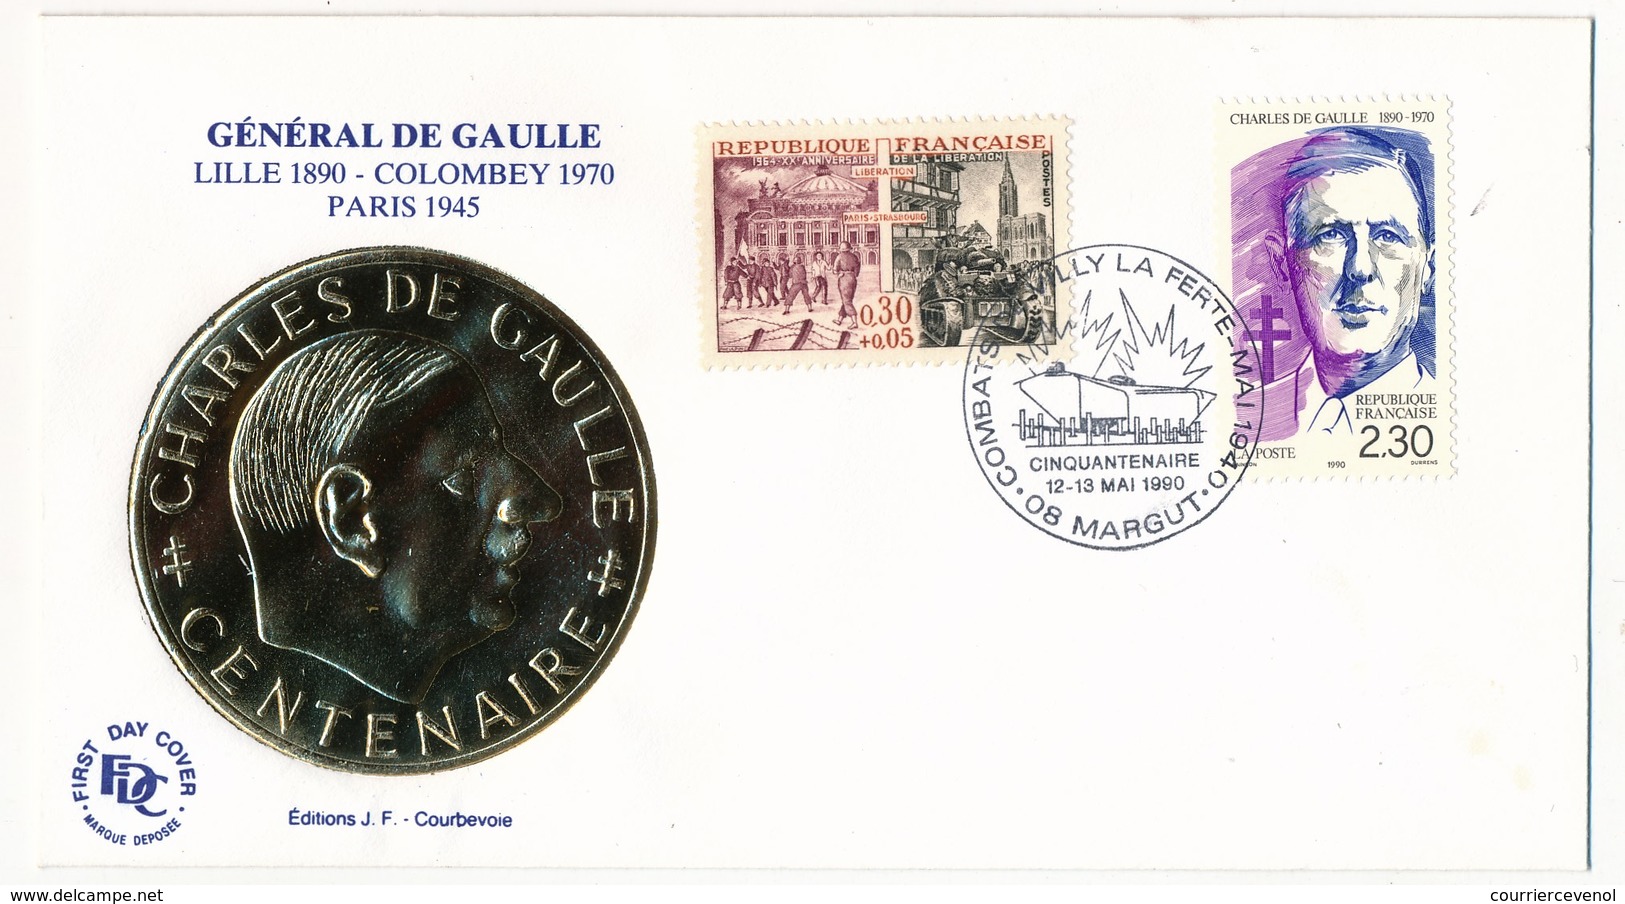 FRANCE - Enveloppe - Cachet Temporaire "Combats De Villy La Ferté - Cinquantenaire" - 08 MARGUT  - 12/13.6.1990 - De Gaulle (Général)